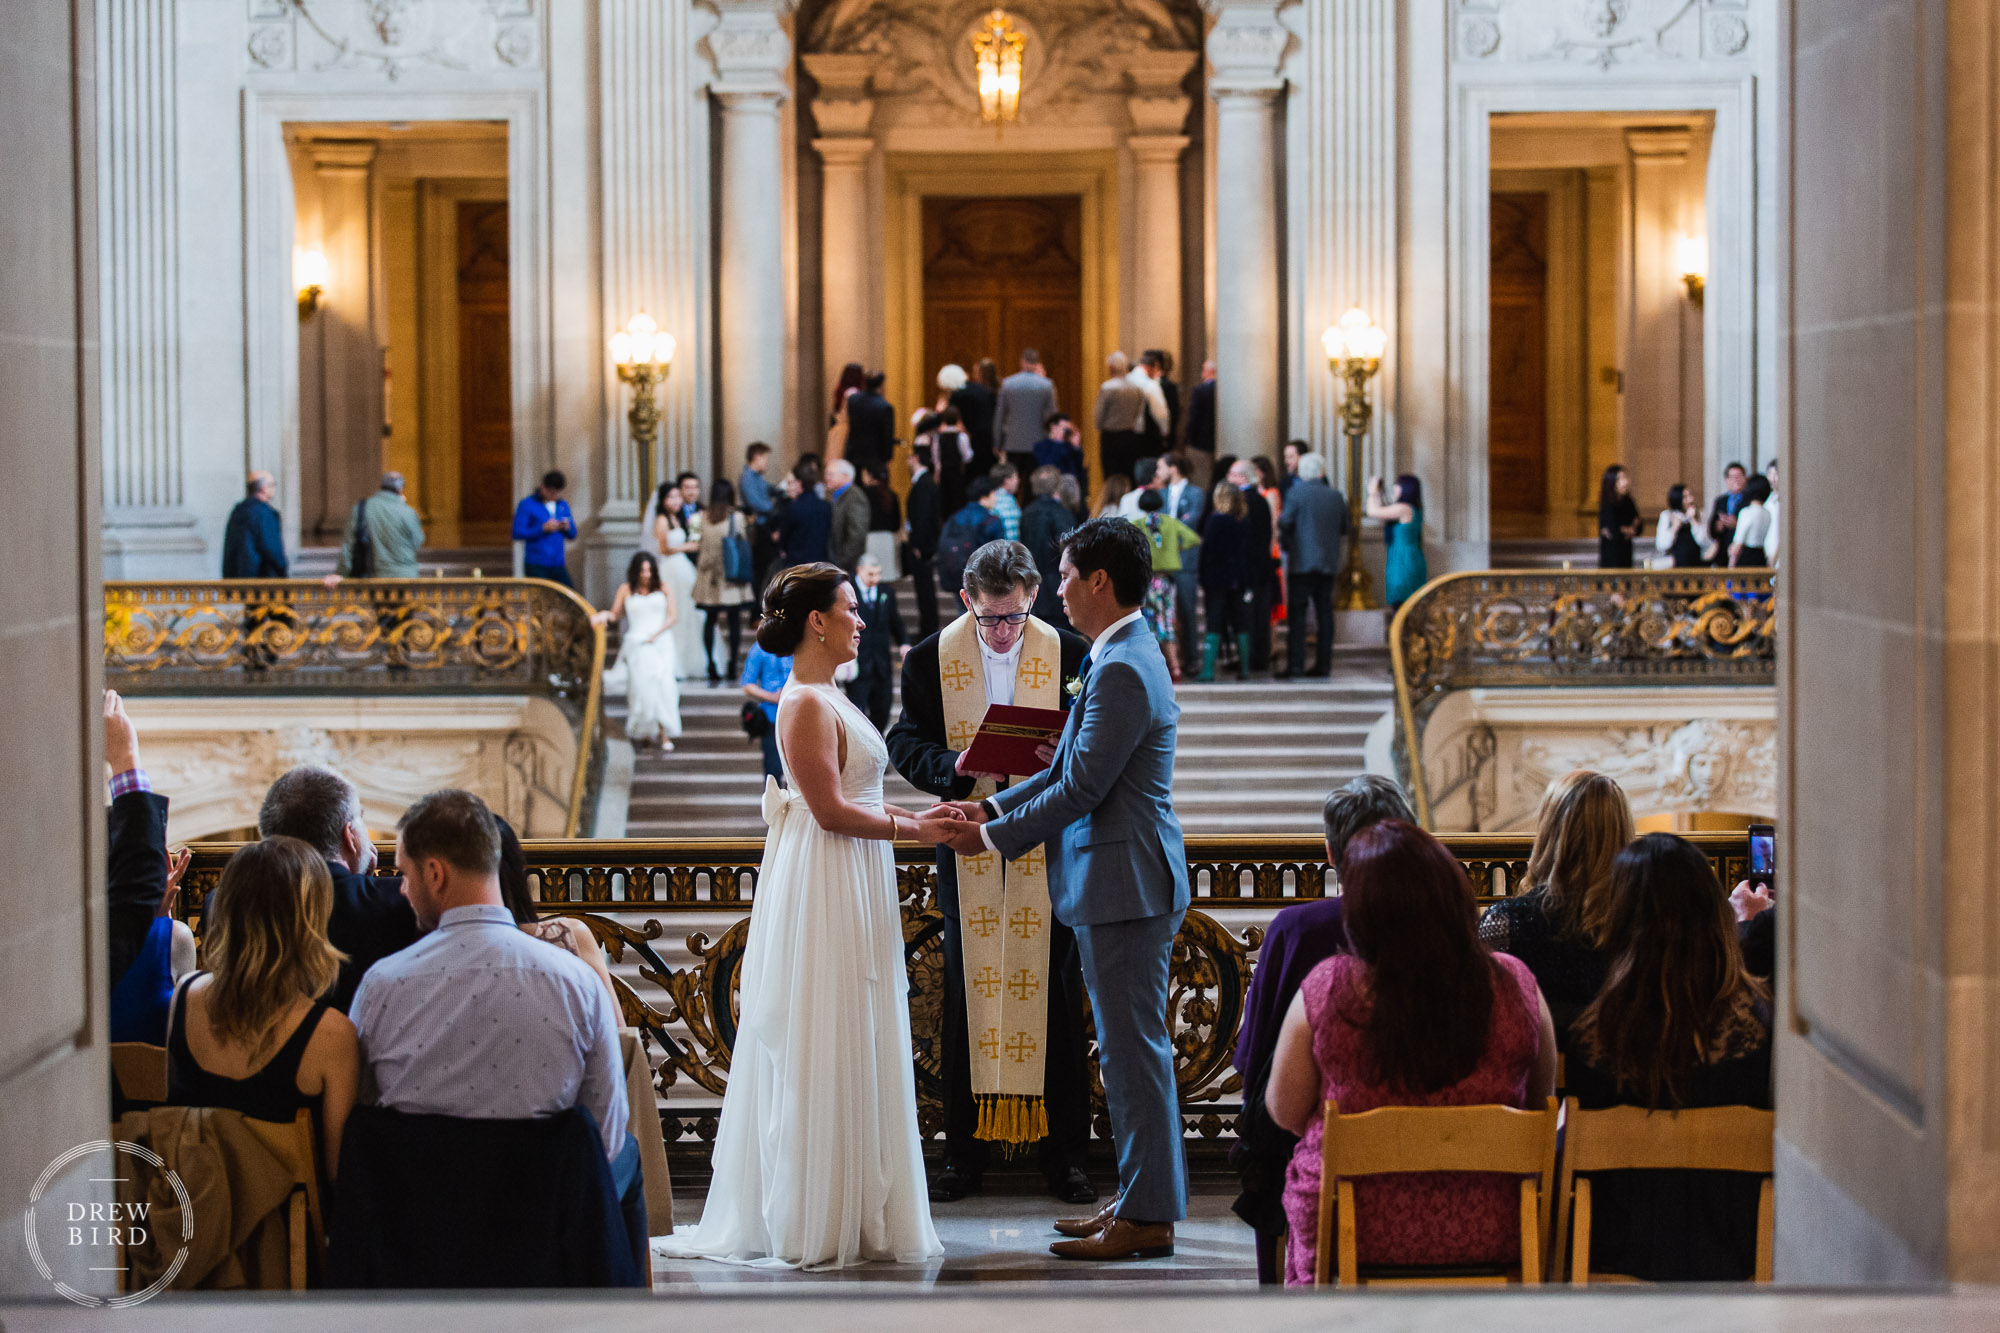 San Francisco city hall wedding photography. Ceremony on the Mayor's Balcony.